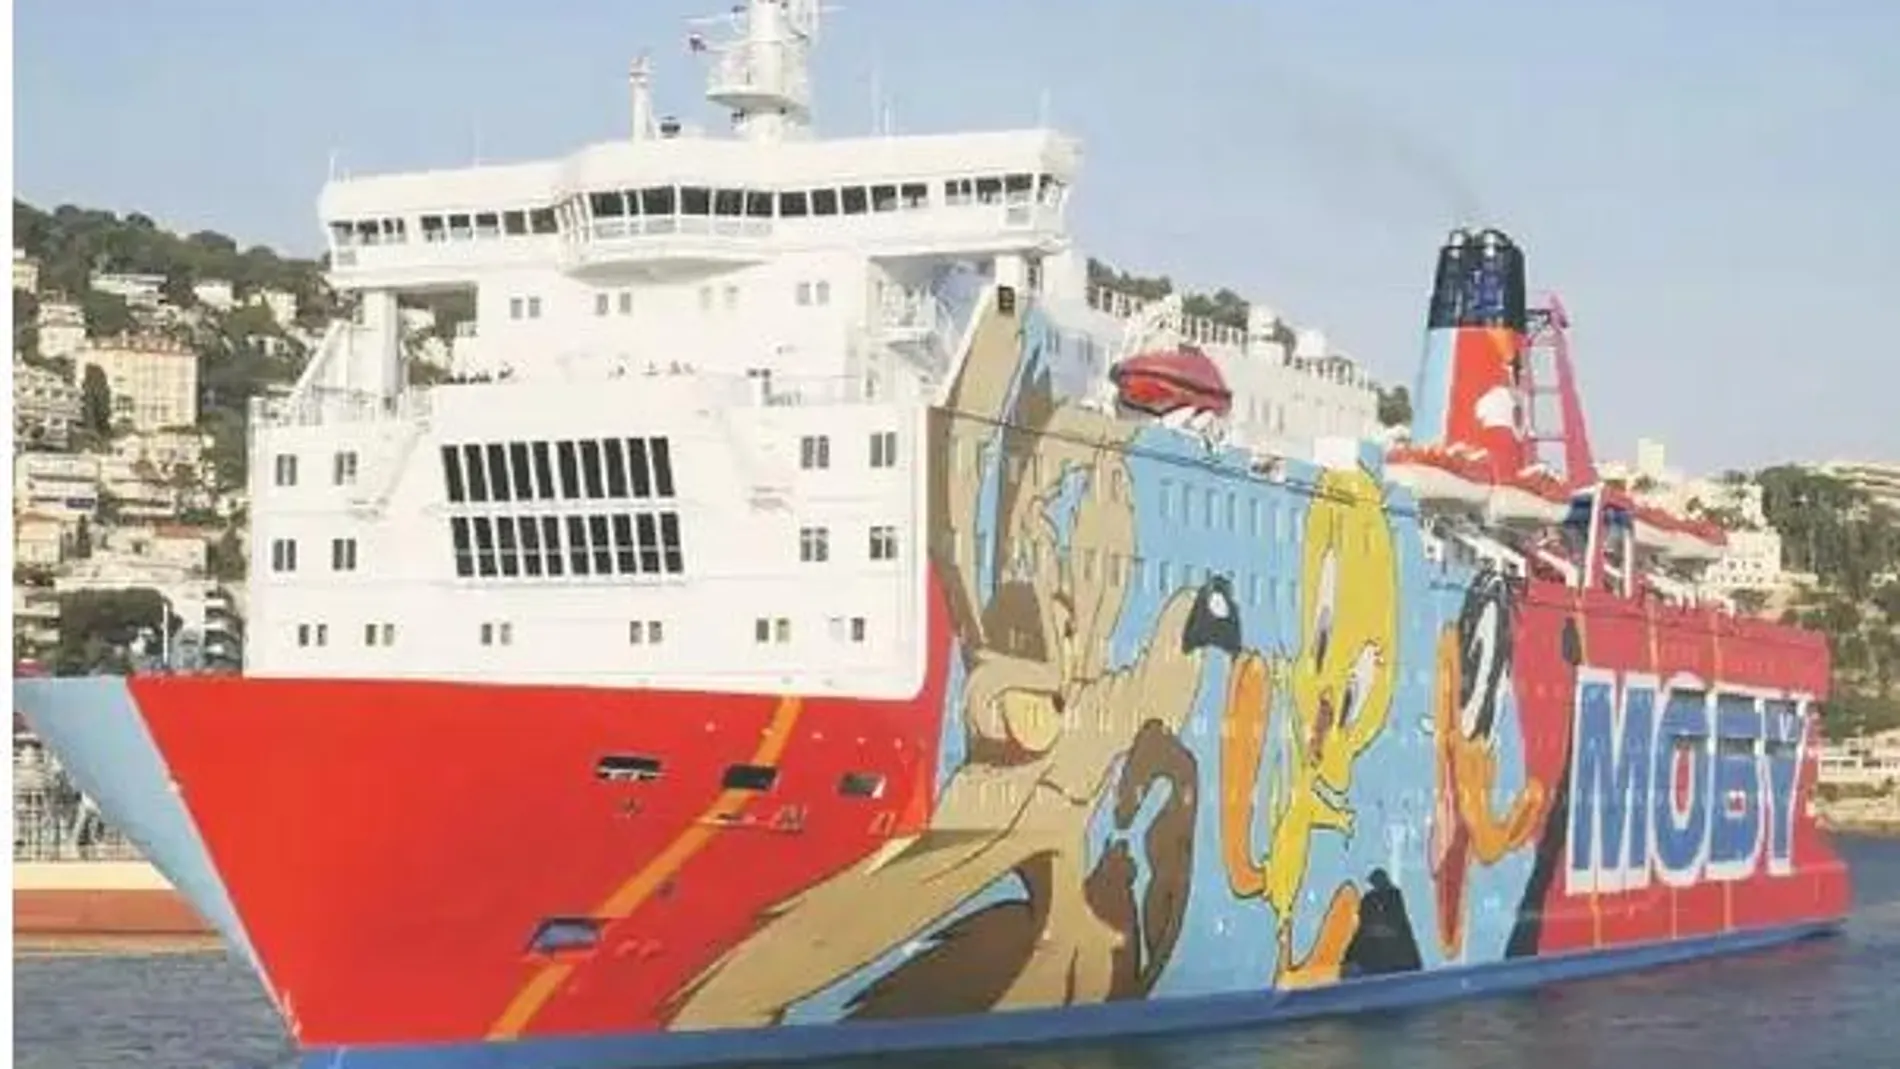 Imagen del barco conocido como "Piolín", en el que alojaron agentes de las Fuerzas de Seguridad durante la intentona golpista